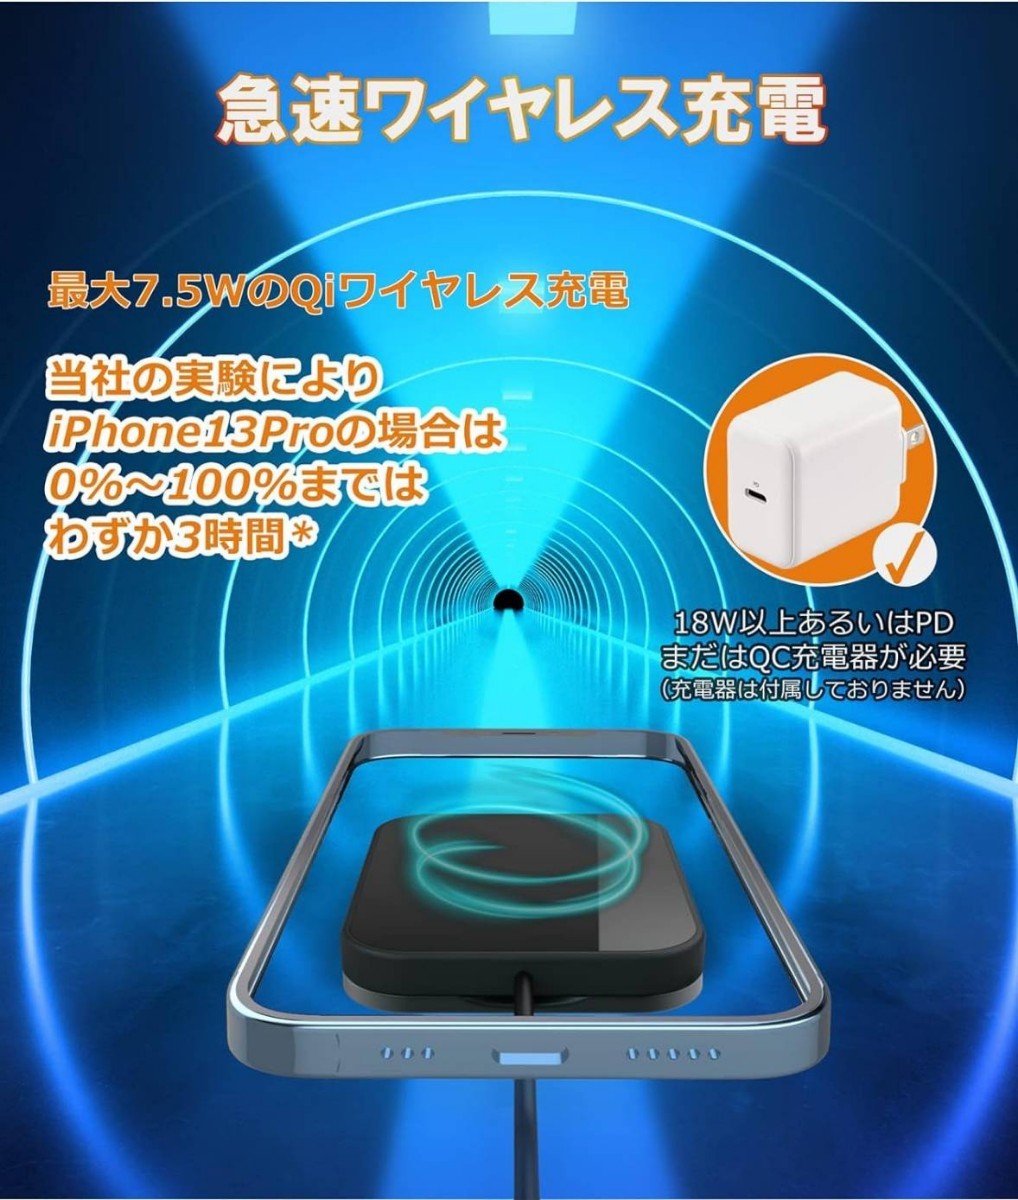 SUKATO iPhone ワイヤレス充電器 スタンド型「 角度自由調節 」7.5W出力 ケーブル長さ1.5m _画像4